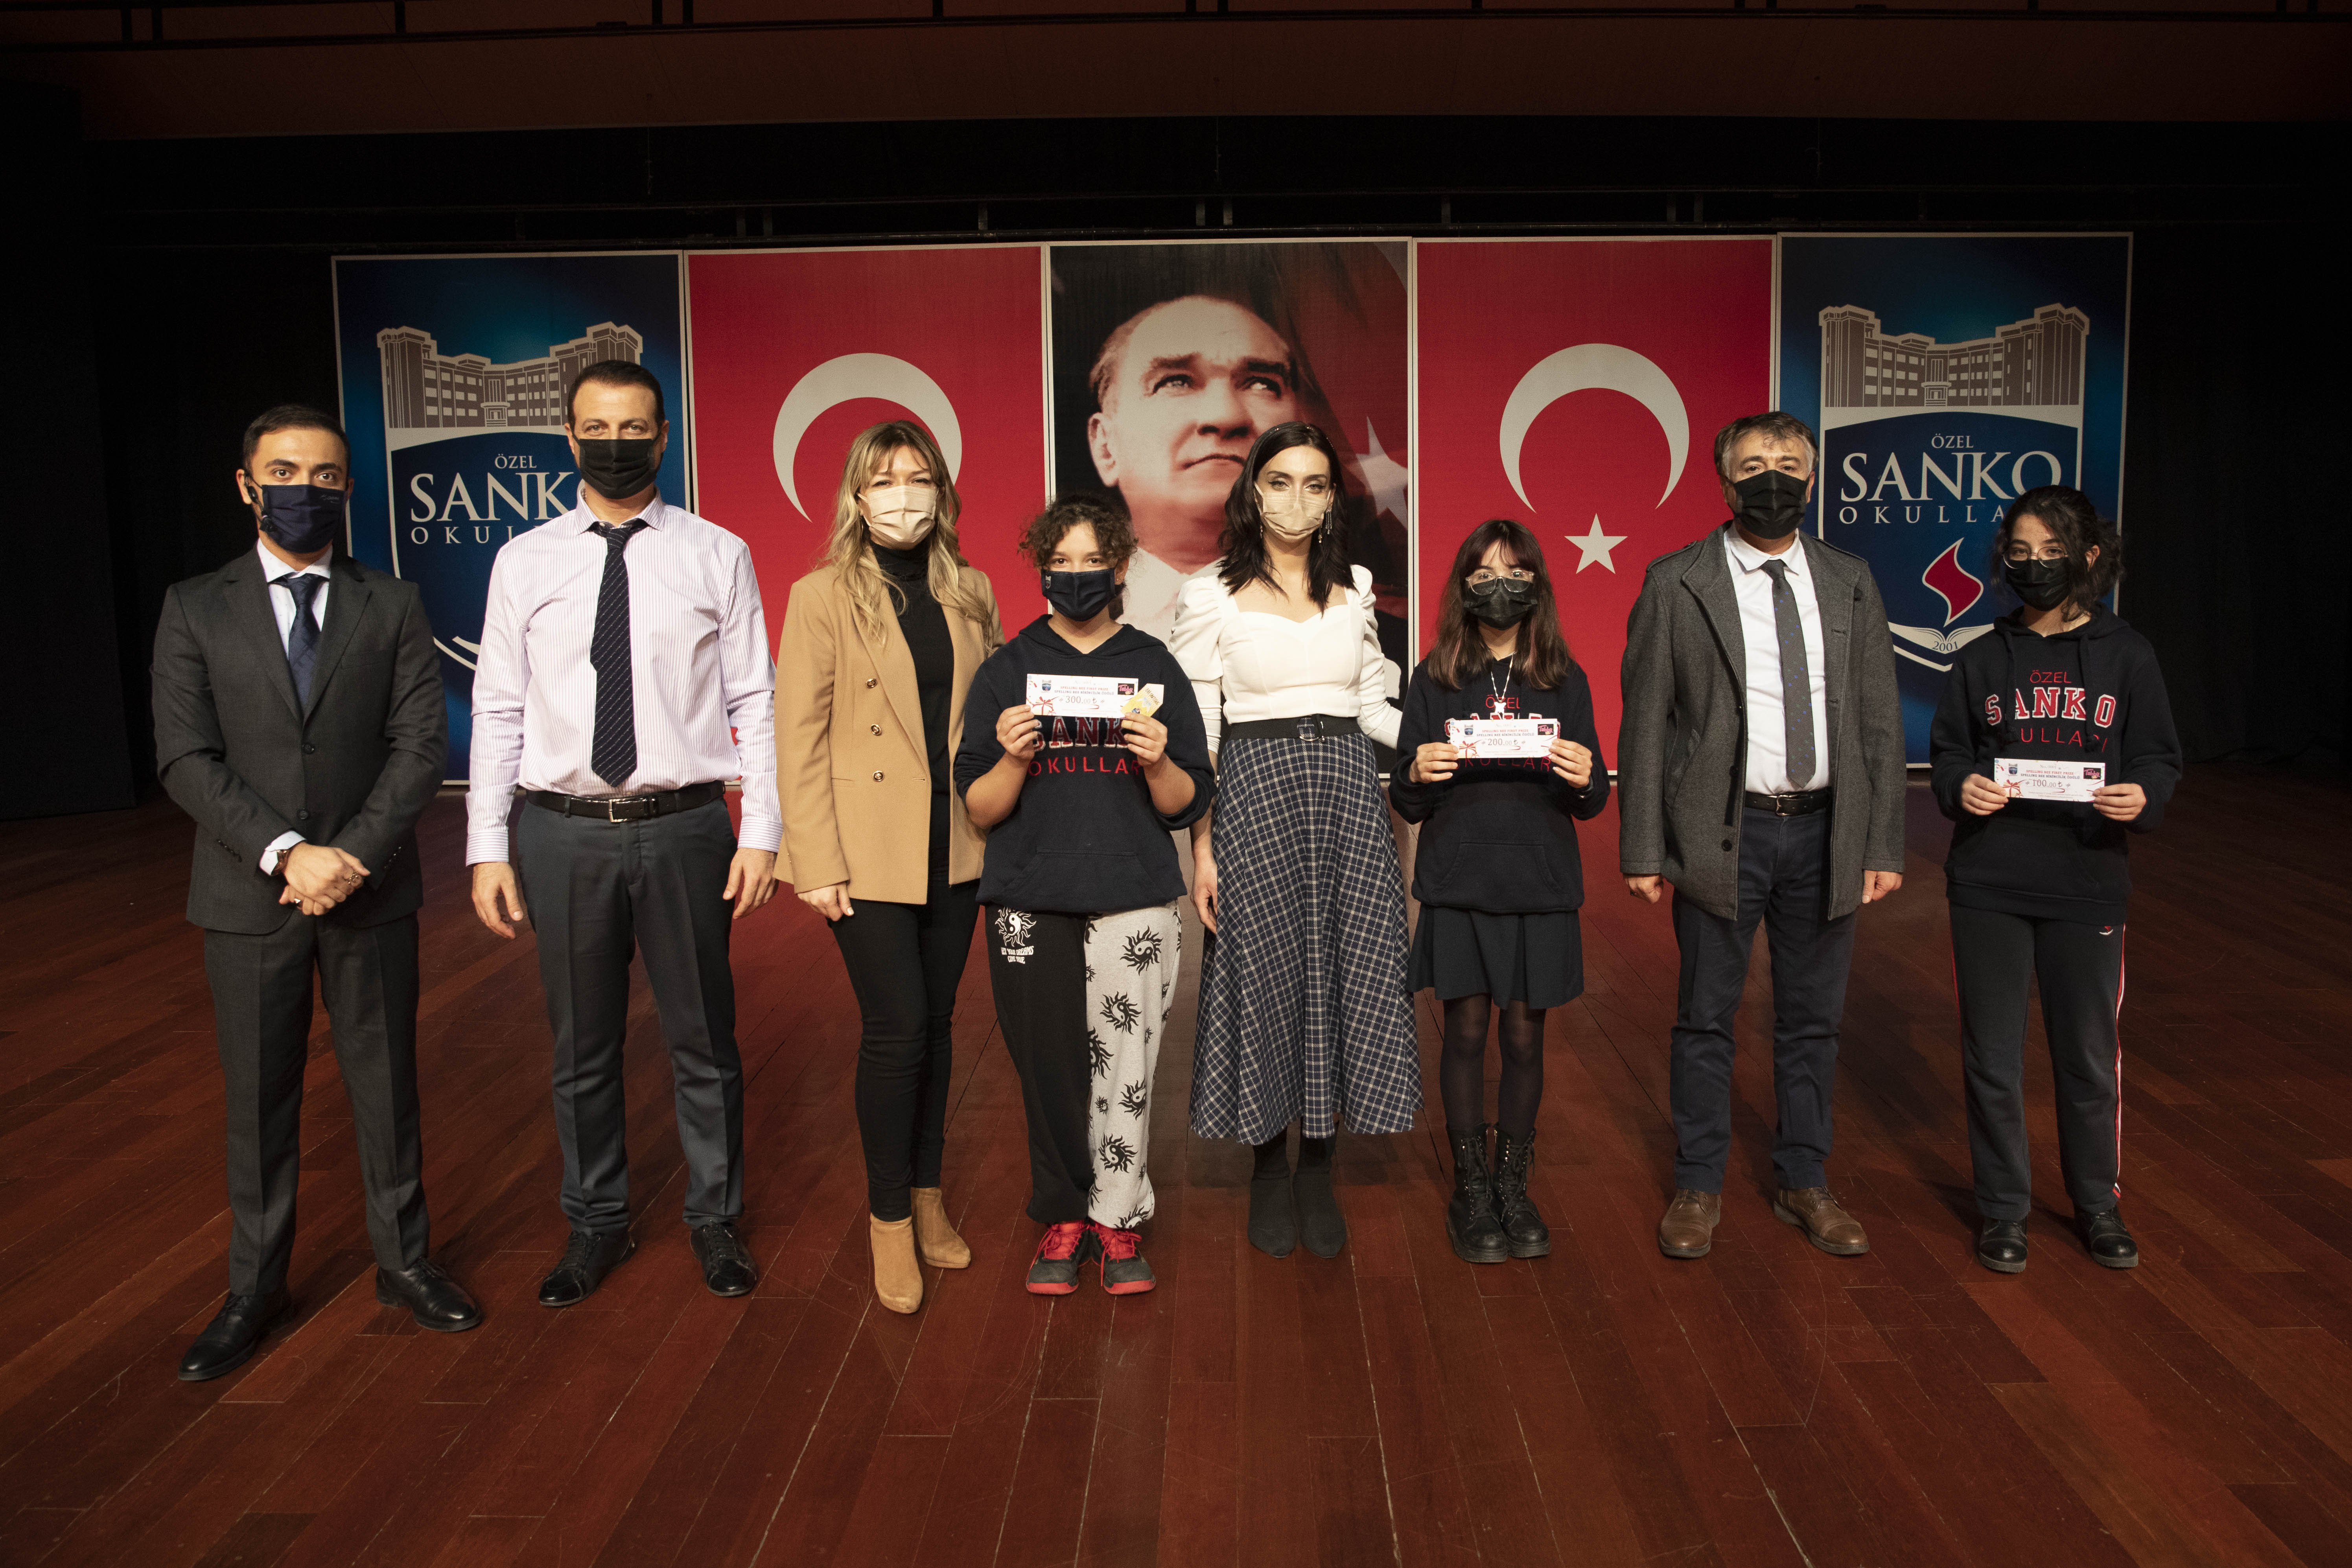 SANKO Okulları lise İngilizce öğretmenleri Kerim Gülşen, Nima Dastafkan, Didem Korkmaz ve Tuğçe Özpamukçu tarafından 9. Sınıf öğrencileri arasında 08 Aralık..